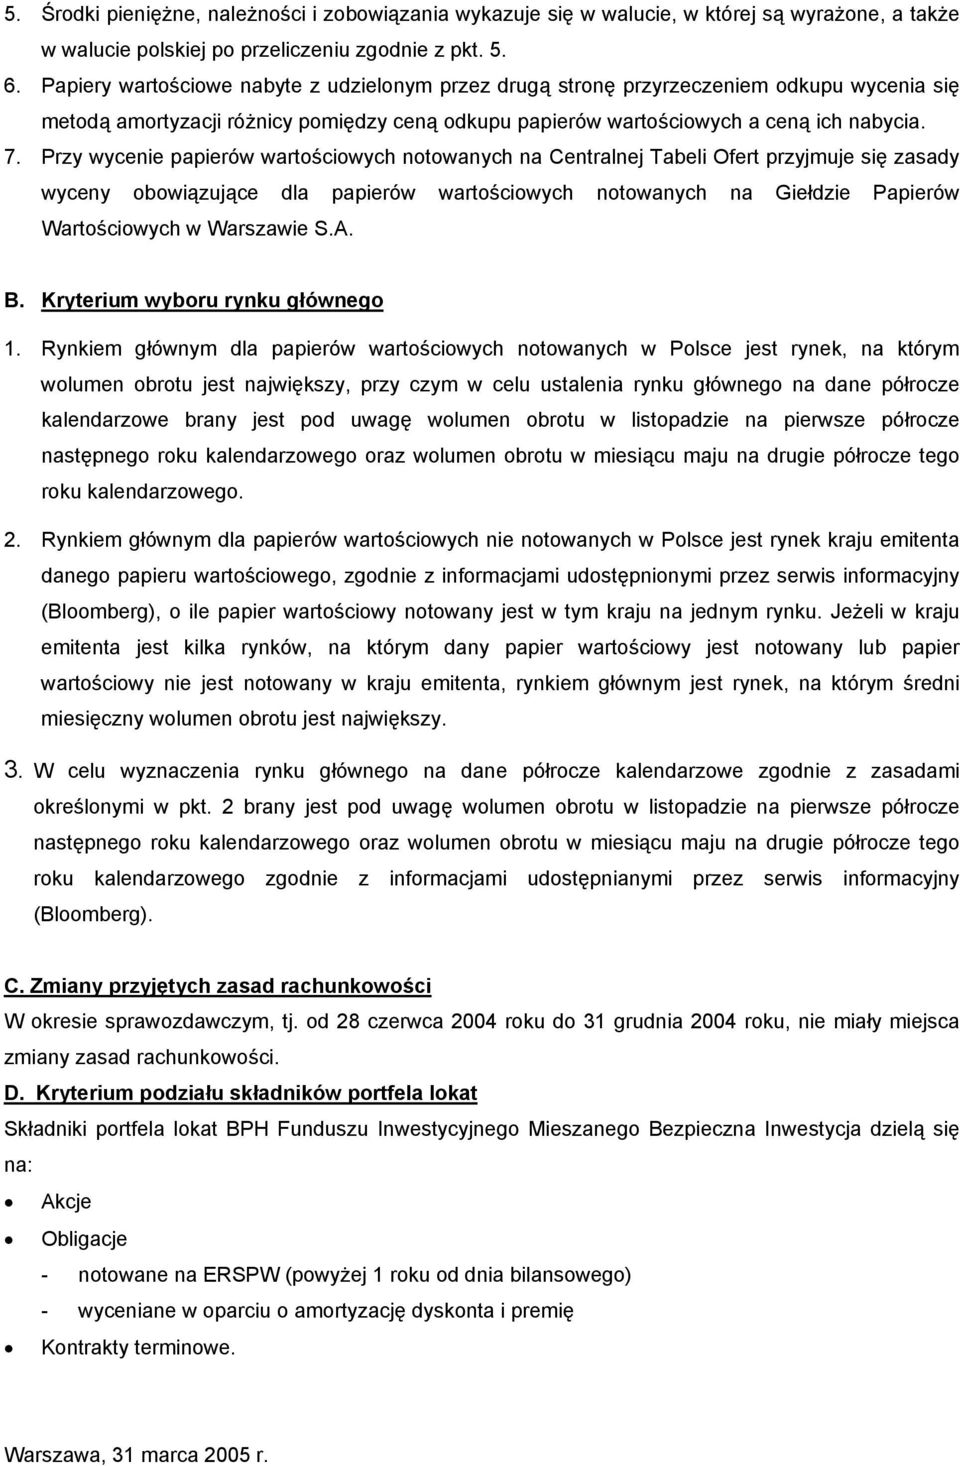 Przy wycenie papierów wartościowych notowanych na Centralnej Tabeli Ofert przyjmuje się zasady wyceny obowiązujące dla papierów wartościowych notowanych na Giełdzie Papierów Wartościowych w Warszawie